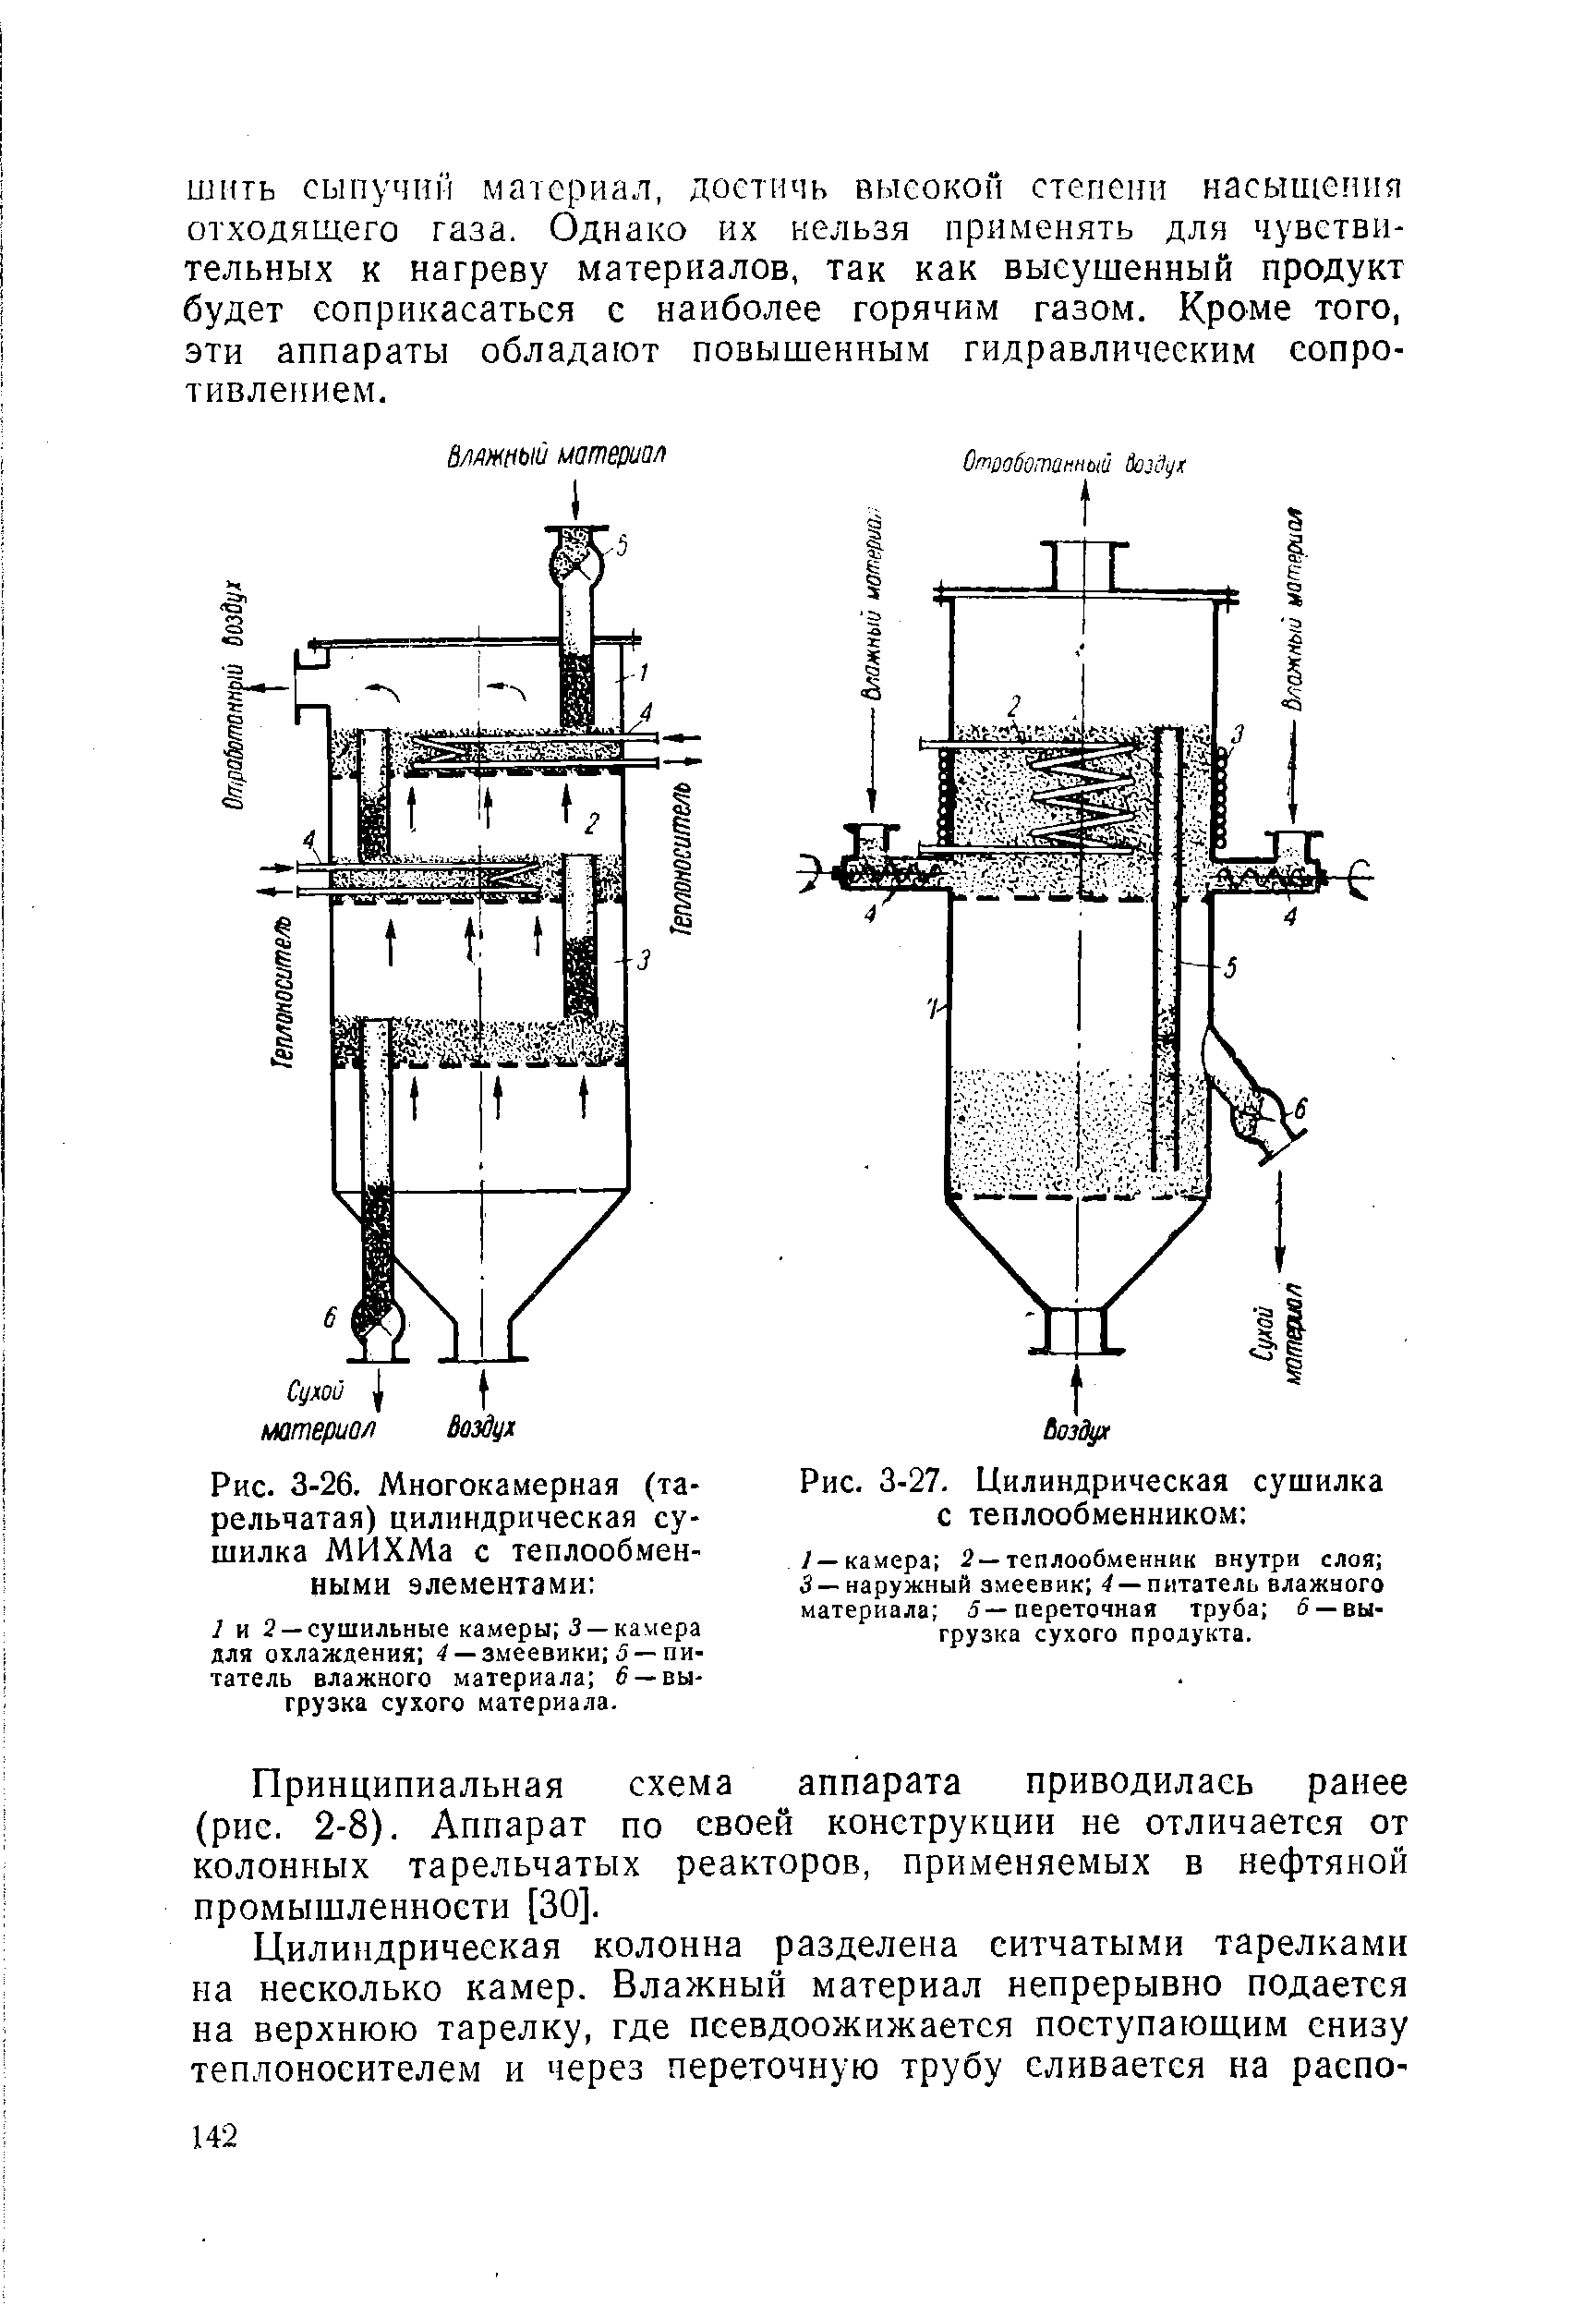 Принципиальная схема аппарата приводилась ранее (рис. 2-8). Аппарат по своей конструкции не отличается от колонных тарельчатых реакторов, применяемых в нефтяной промышленности [30].